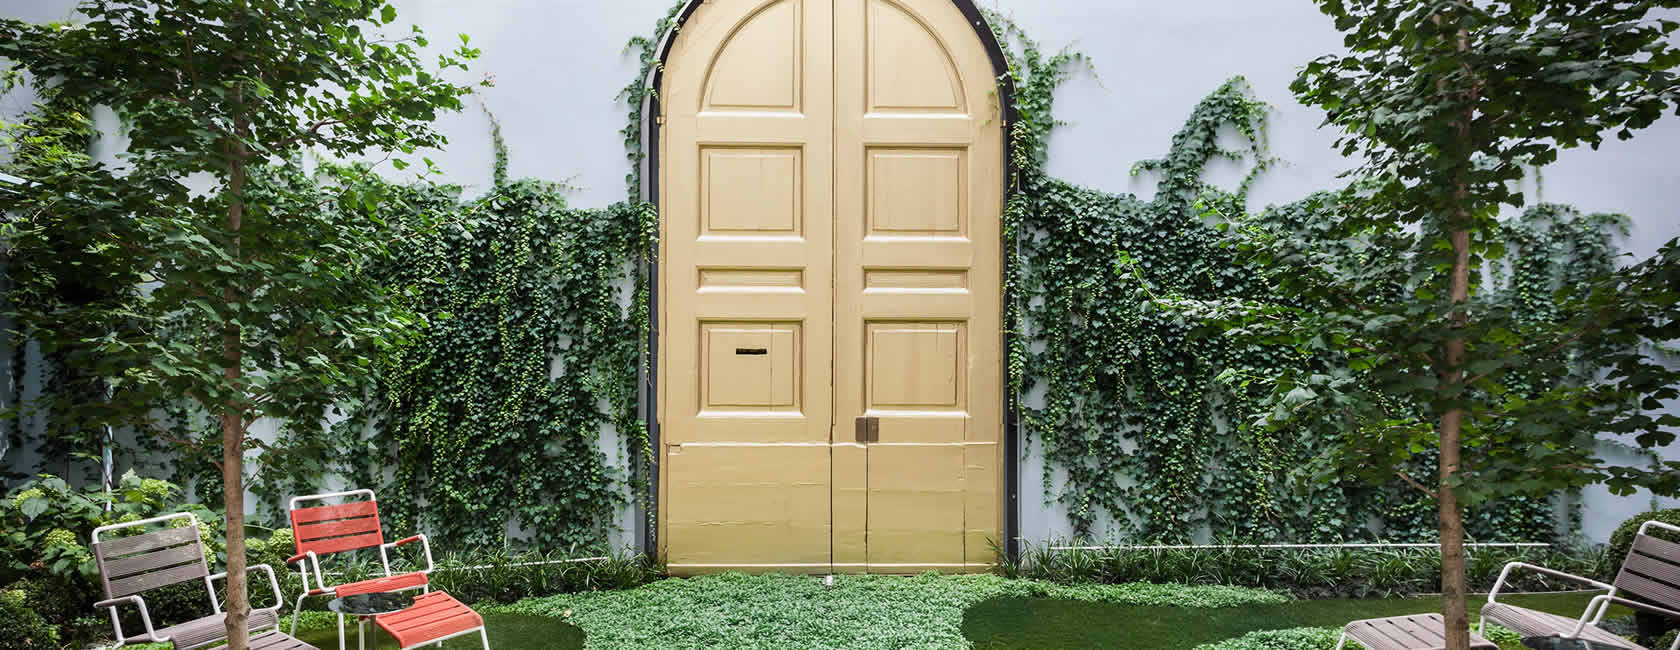 Portal dorado del patio exterior del Senato Hotel Milano